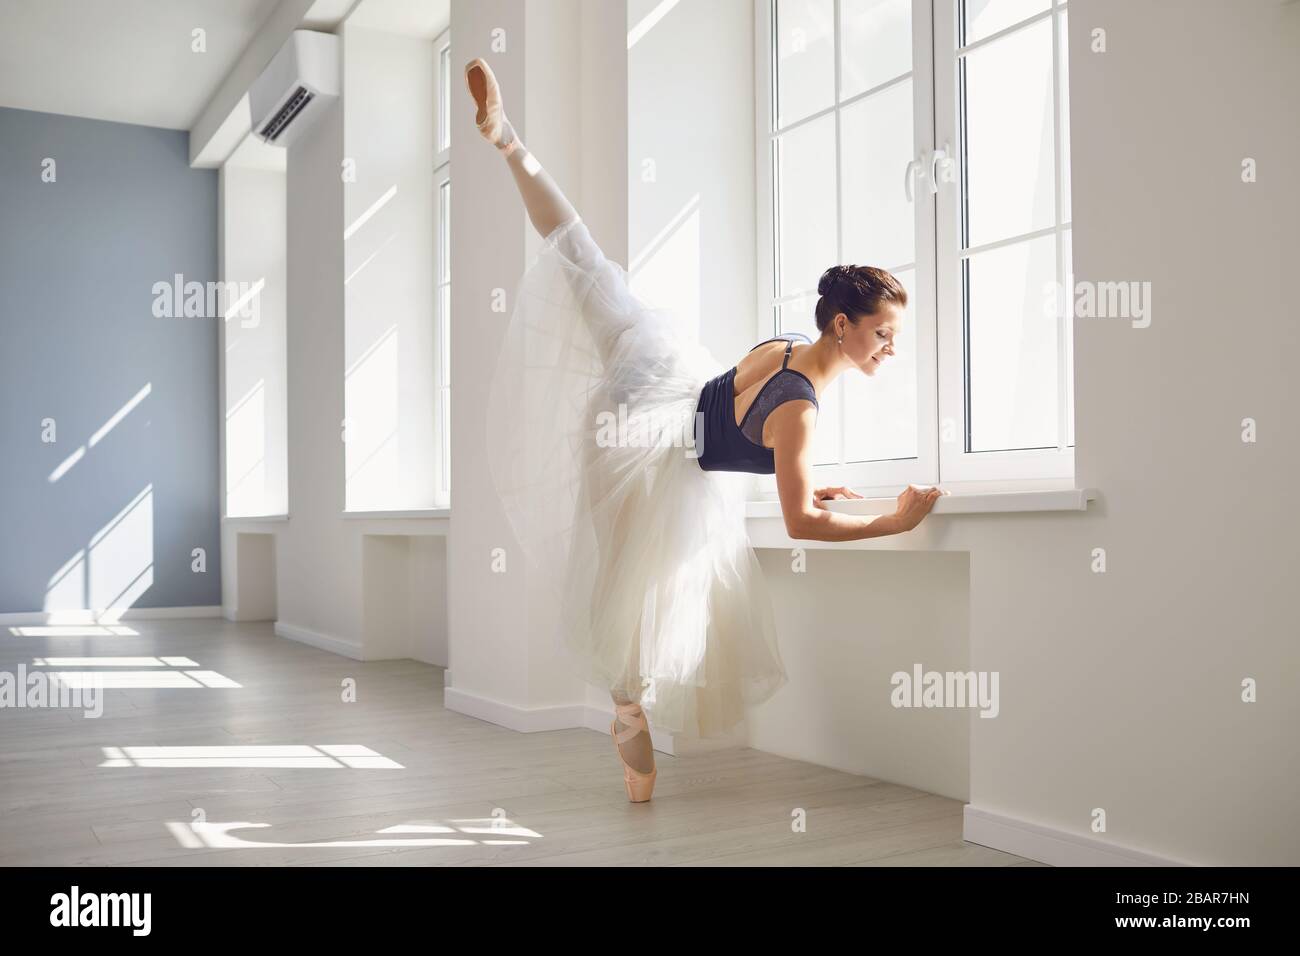 Ballerine. La jeune danseuse de ballet élégante répète une performance dans un studio blanc avec des fenêtres. Banque D'Images